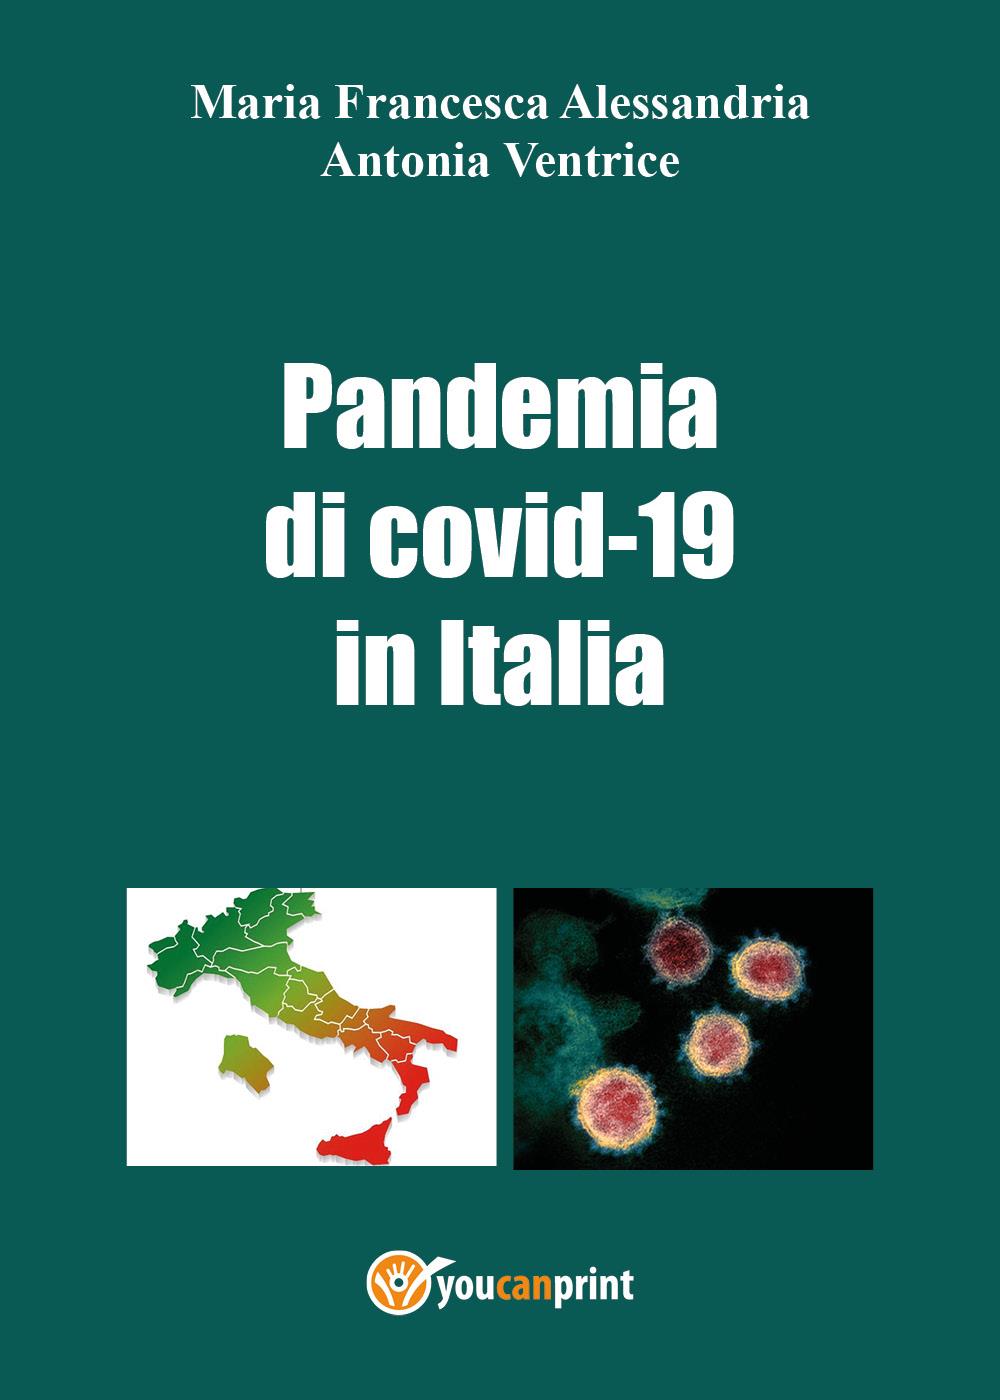 La pandemia di covid-19 in italia